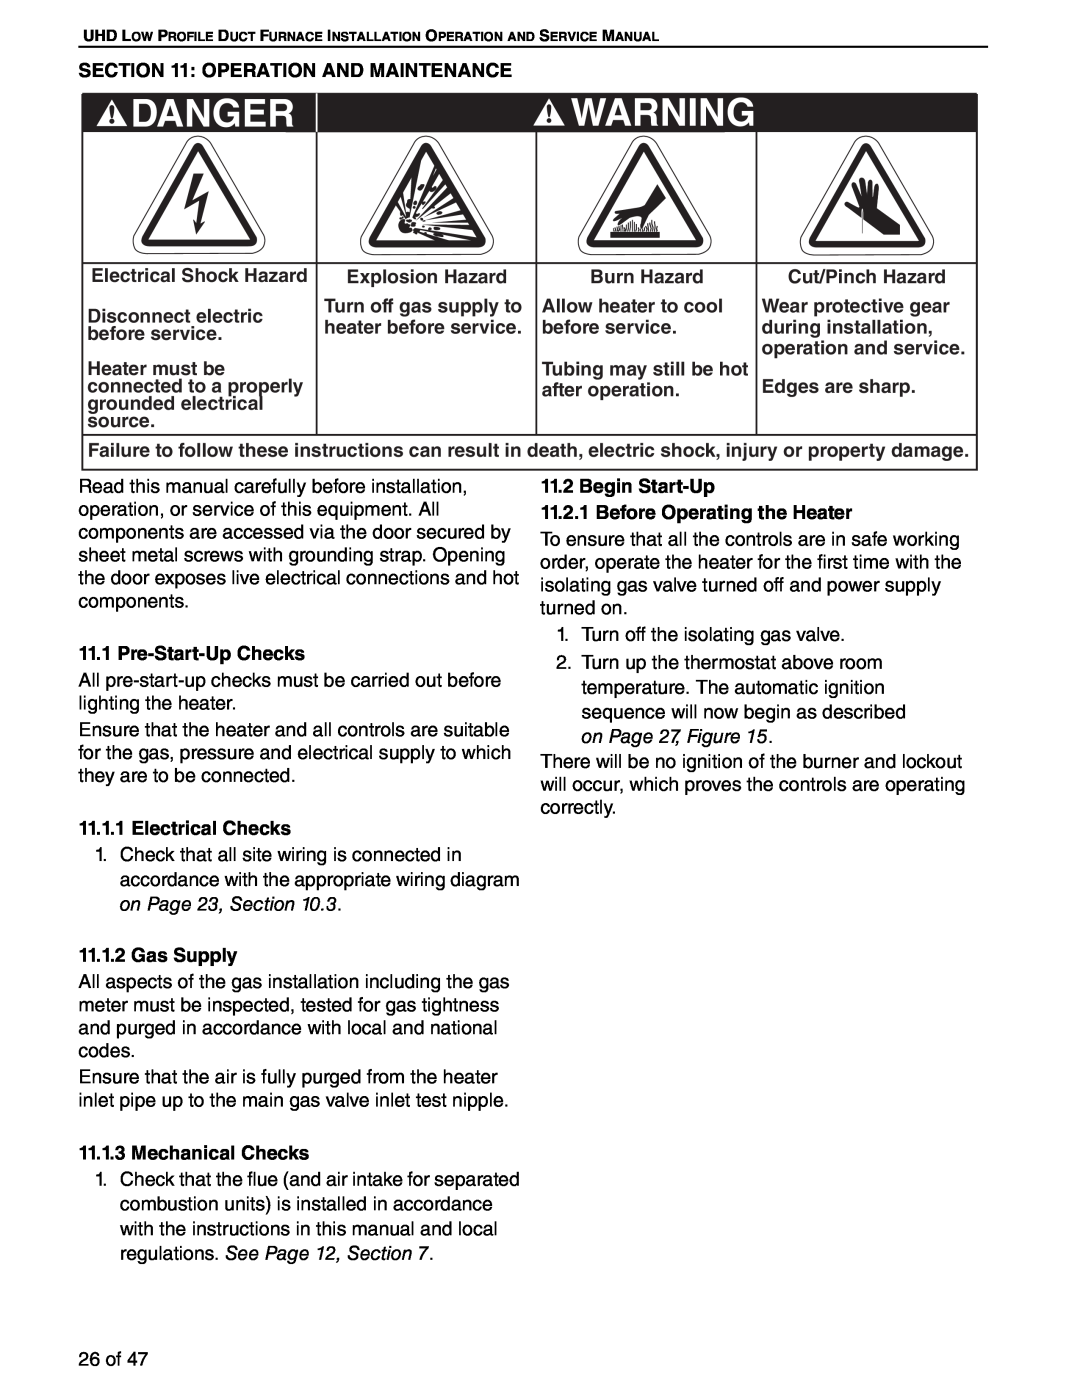 Roberts Gorden 100, 75 Danger, Operation And Maintenance, Electrical Shock Hazard, Burn Hazard, Cut/Pinch Hazard, source 